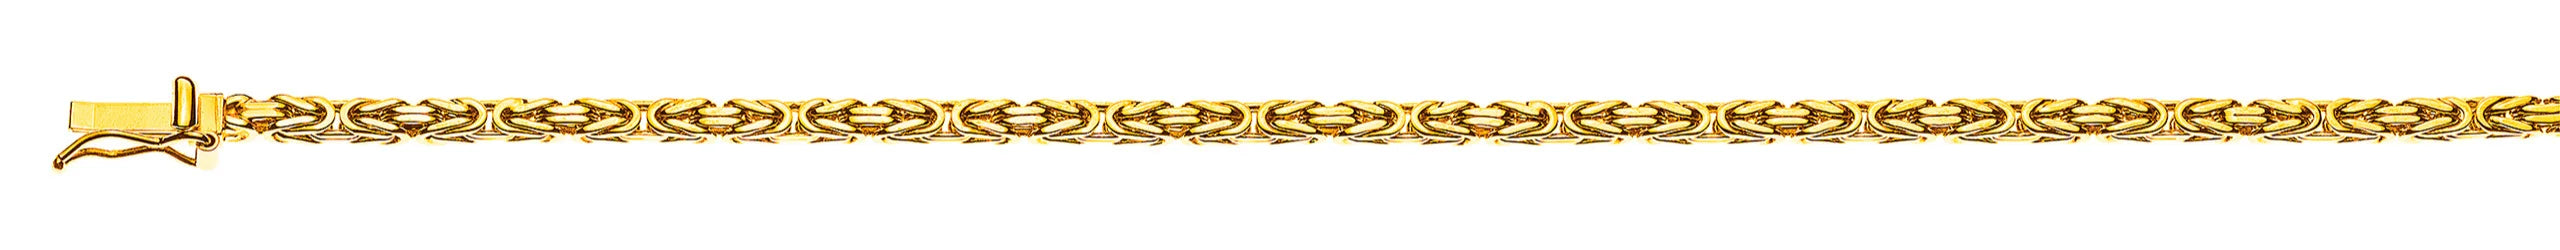 Armband Königskette klassisch Gelbgold 750 ca. 2.5 mm x 19cm